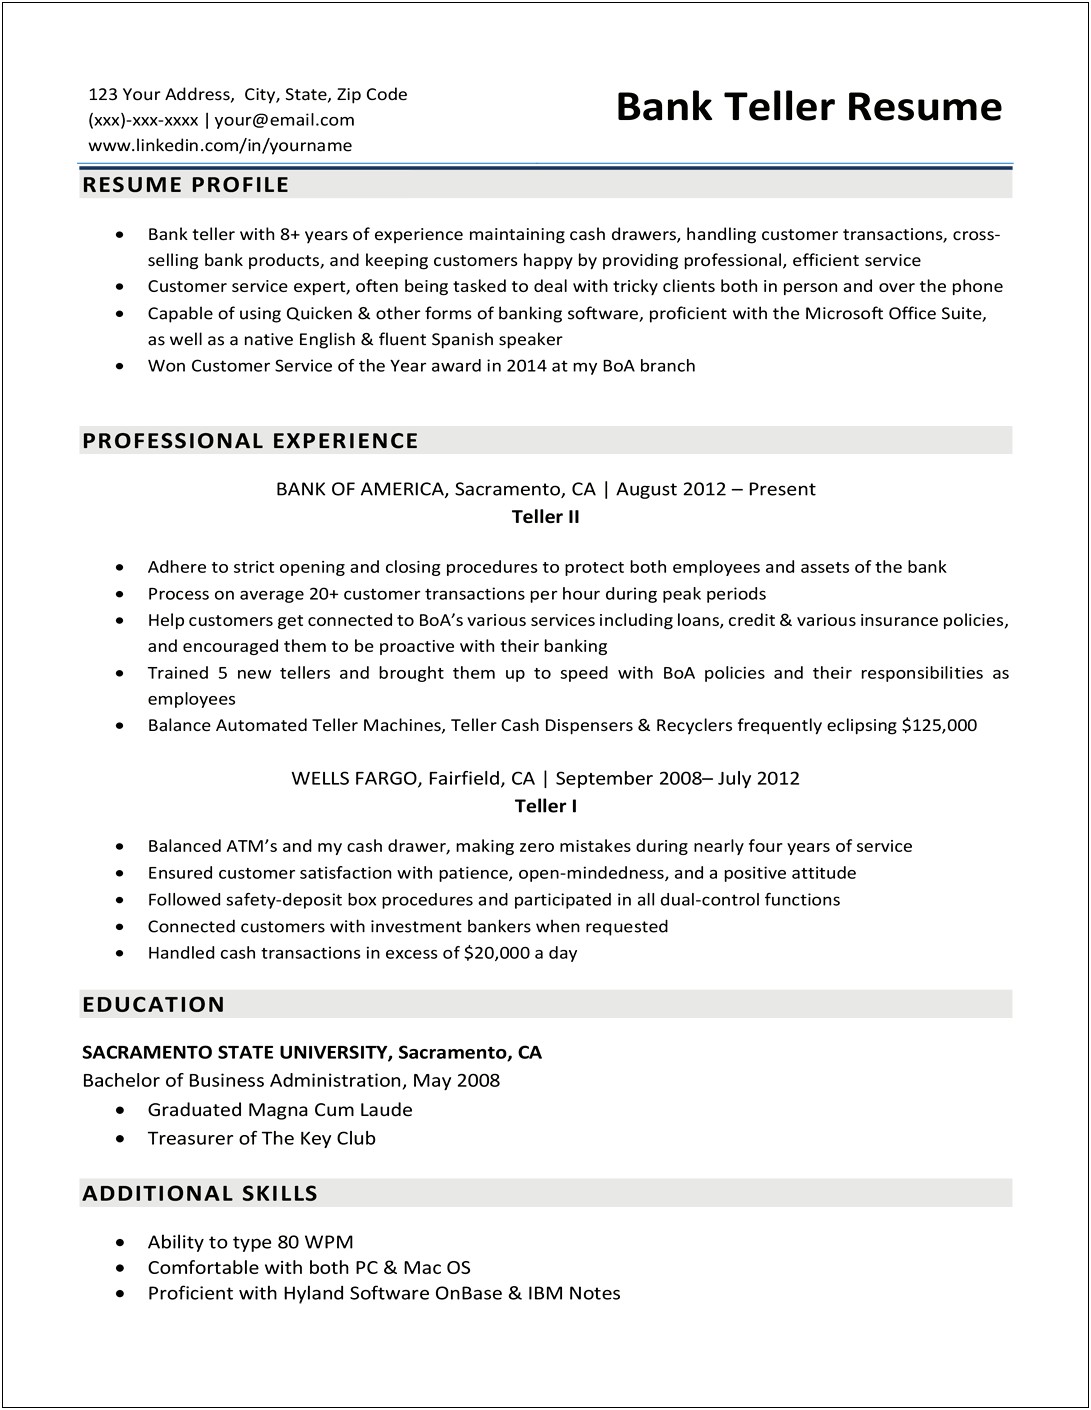 Sample Resume Objectives For Bank Teller